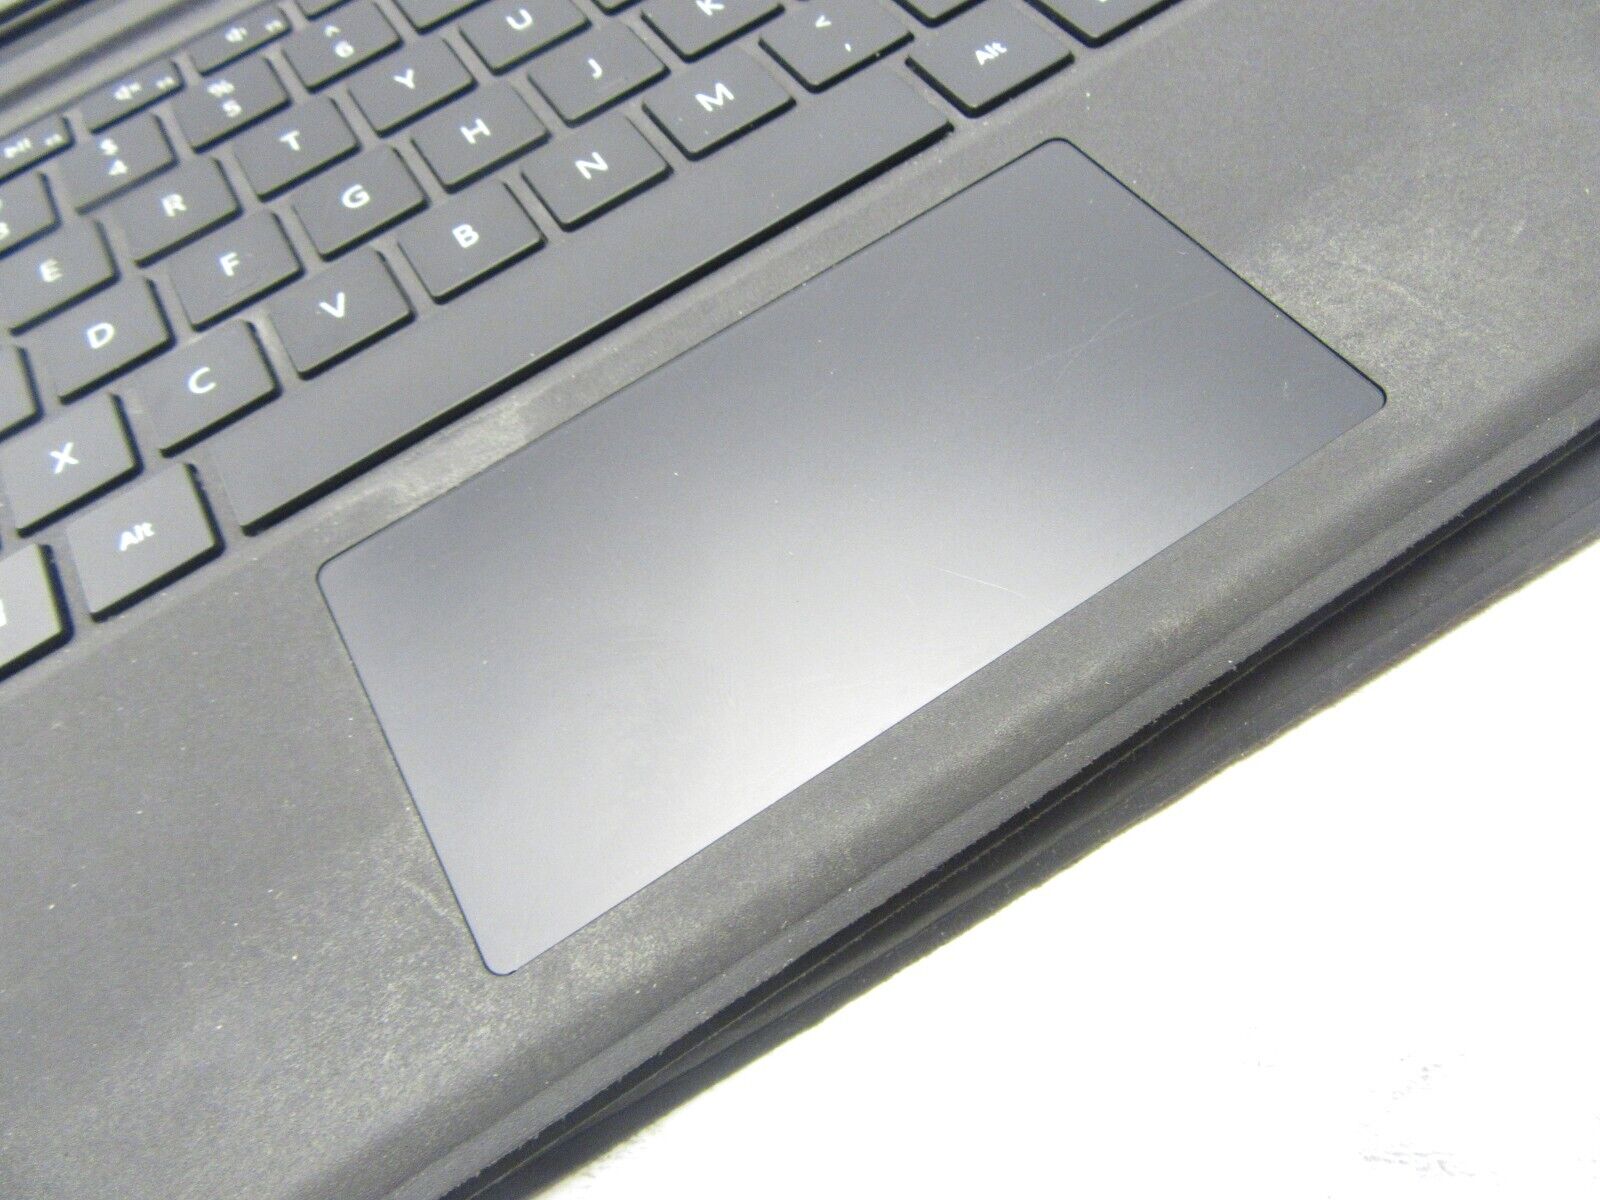 Microsoft Surface Pro 1725 Type Cover Keyboard Pro 3,4,6,7 - Wear & Tear *READ*